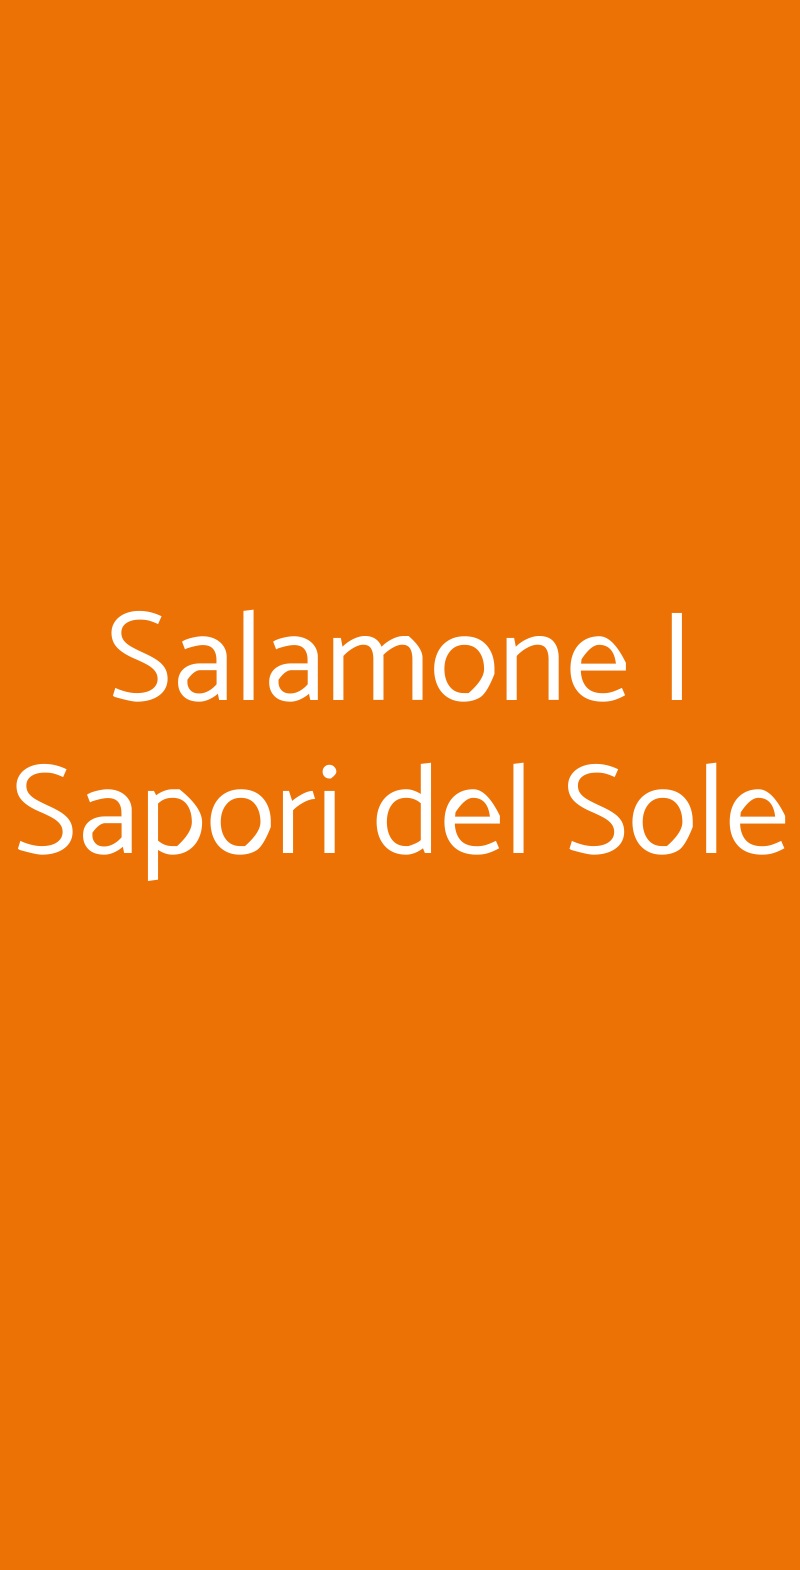 Salamone I Sapori del Sole Palermo menù 1 pagina